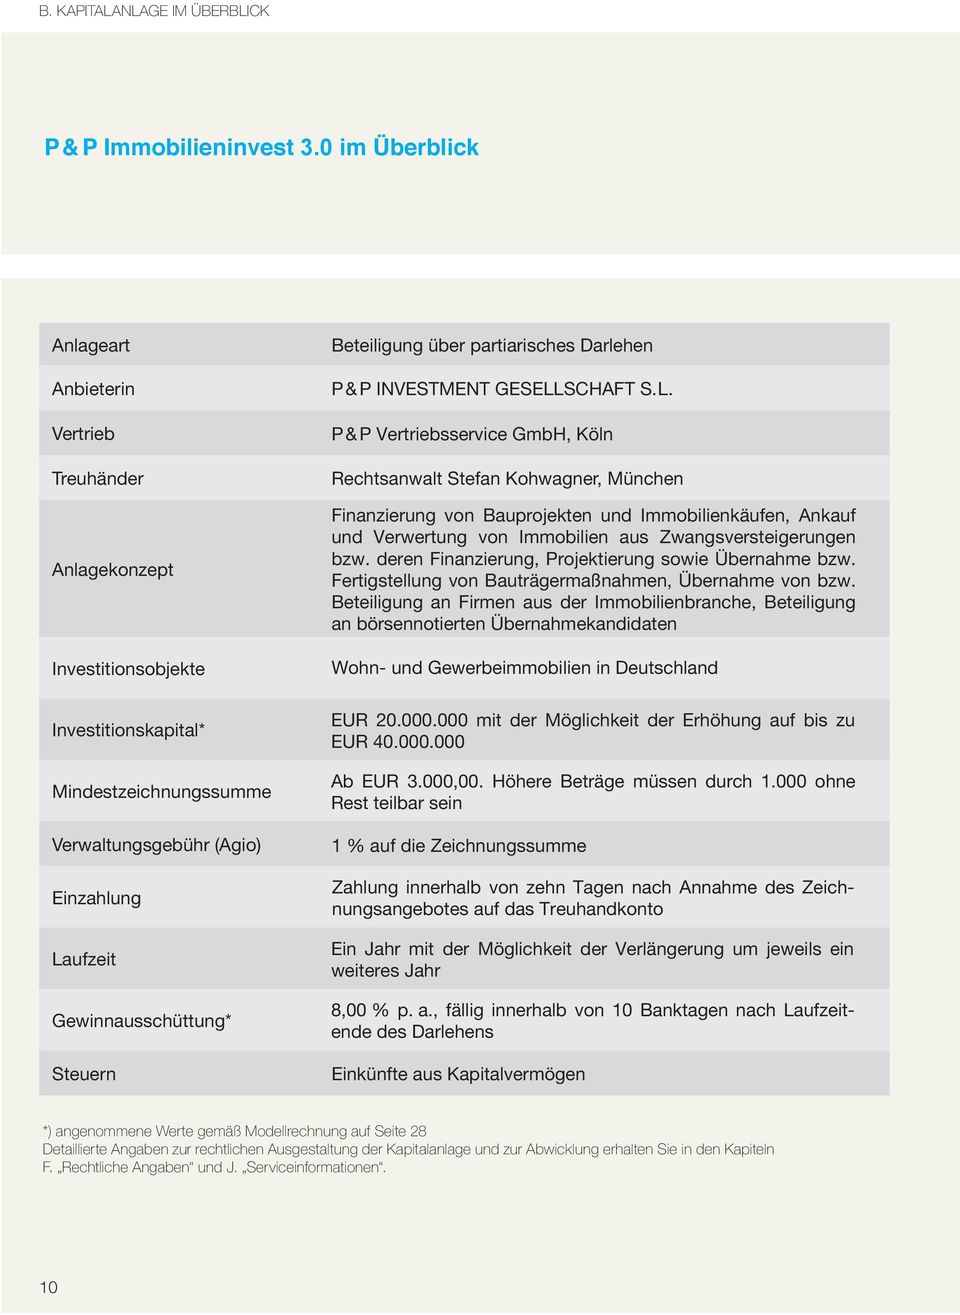 Köln Rechtsanwalt Stefan Kohwagner, München Finanzierung von Bauprojekten und Immobilienkäufen, Ankauf und Verwertung von Immobilien aus Zwangsversteigerungen bzw.